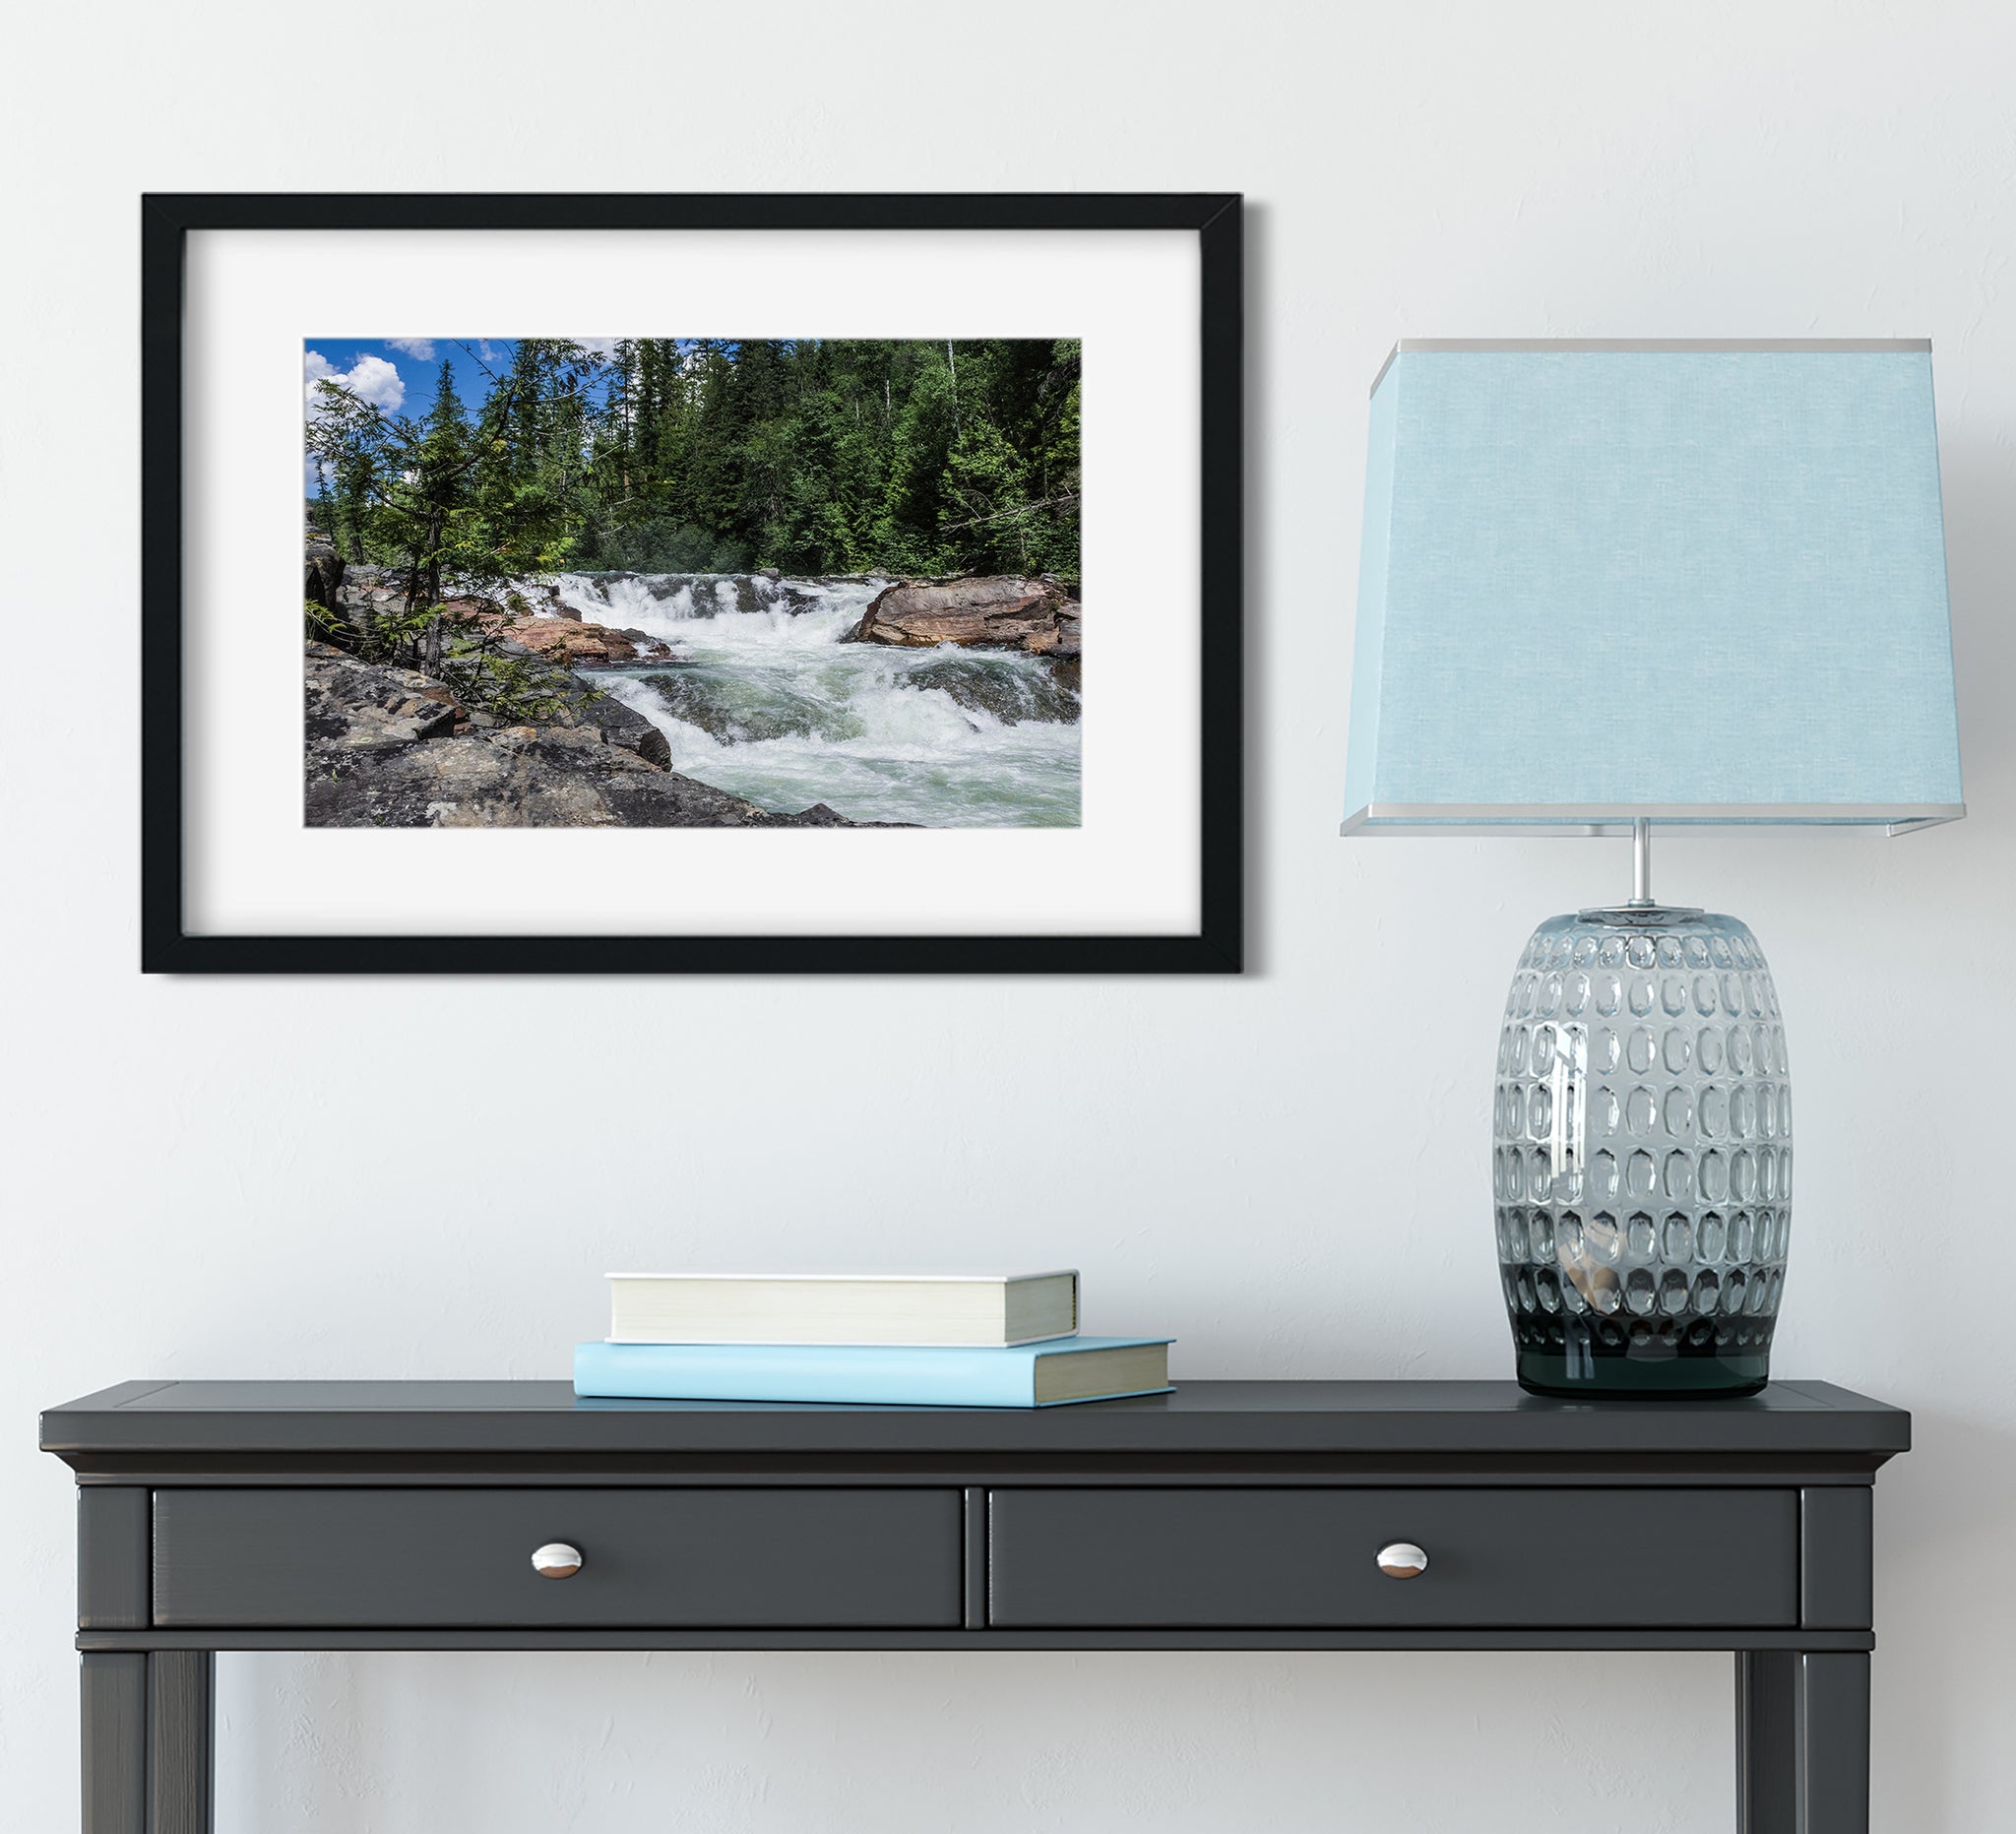 Yaak Falls Montana Nature Photo Print Waterfall Photography